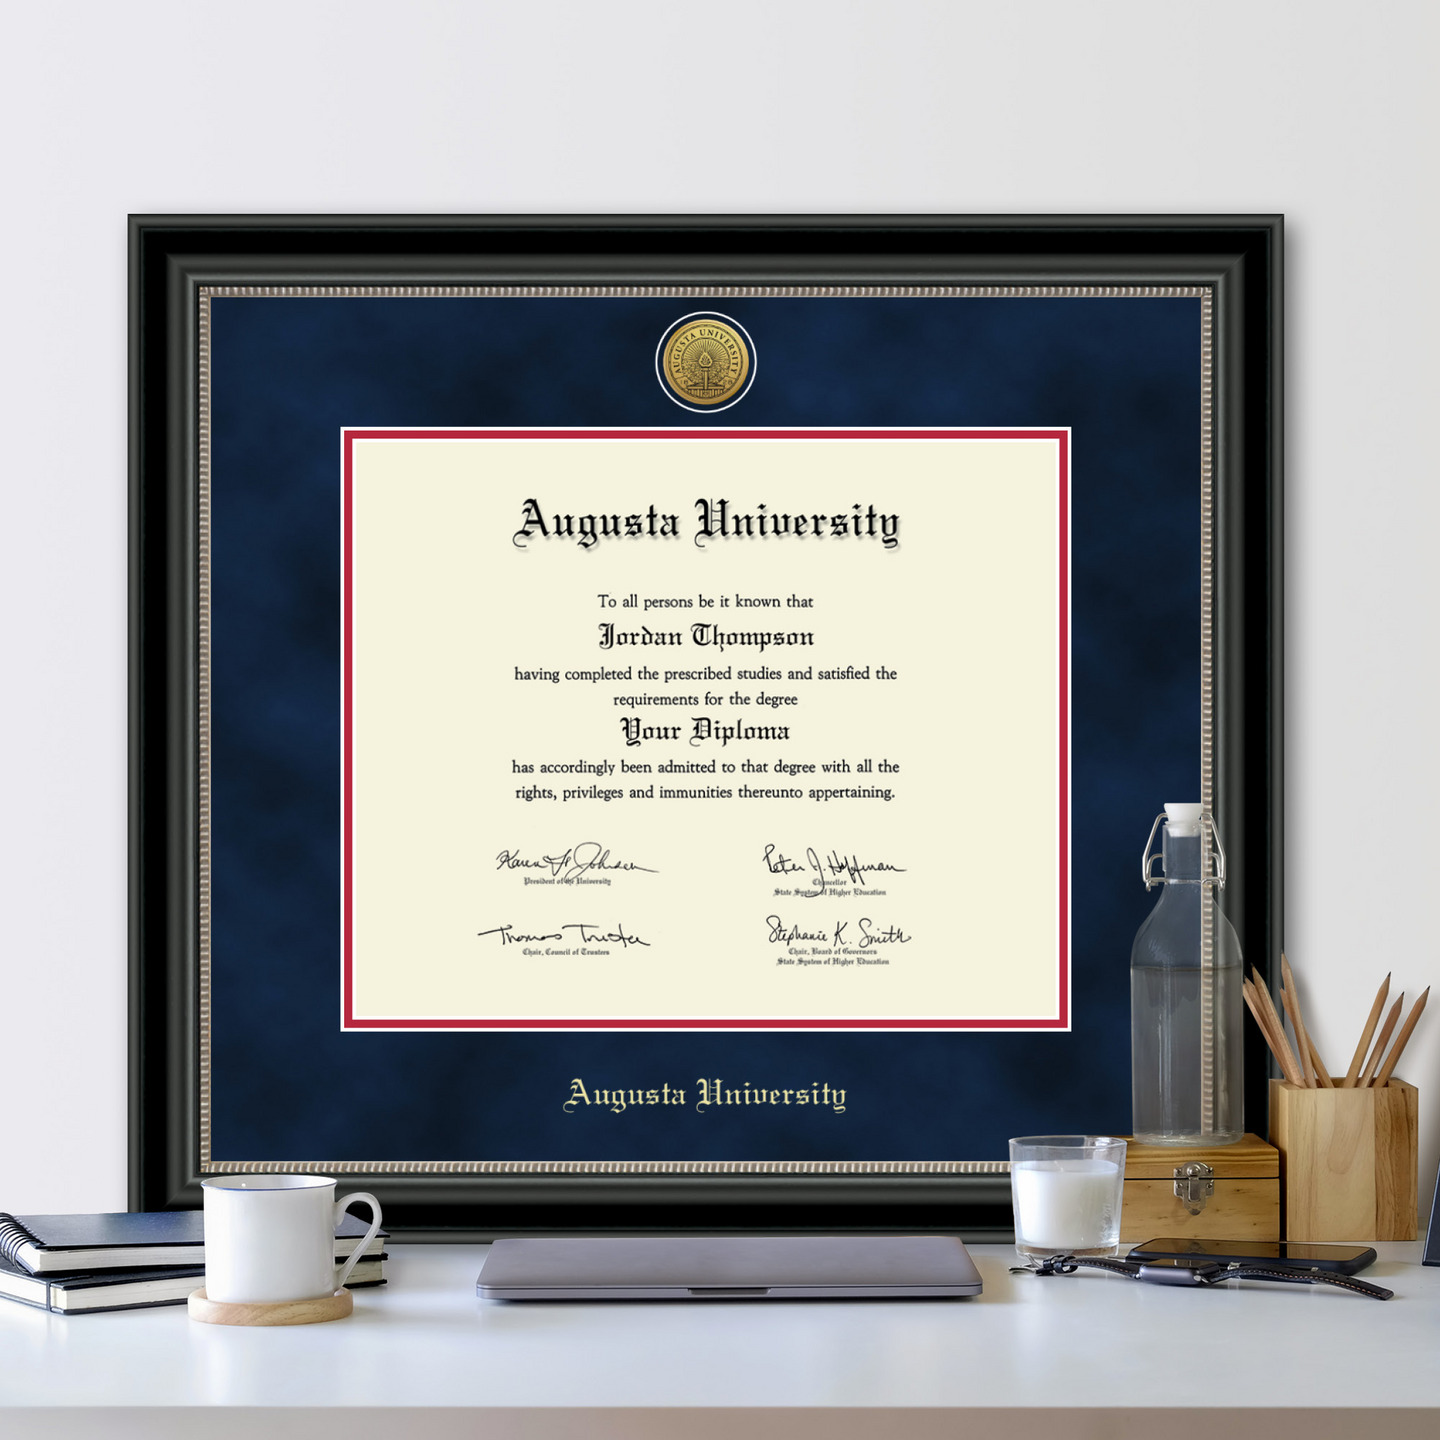 Augusta University Gold Engraved Medallion Diploma Frame in Noir Item 278541 from JagStore